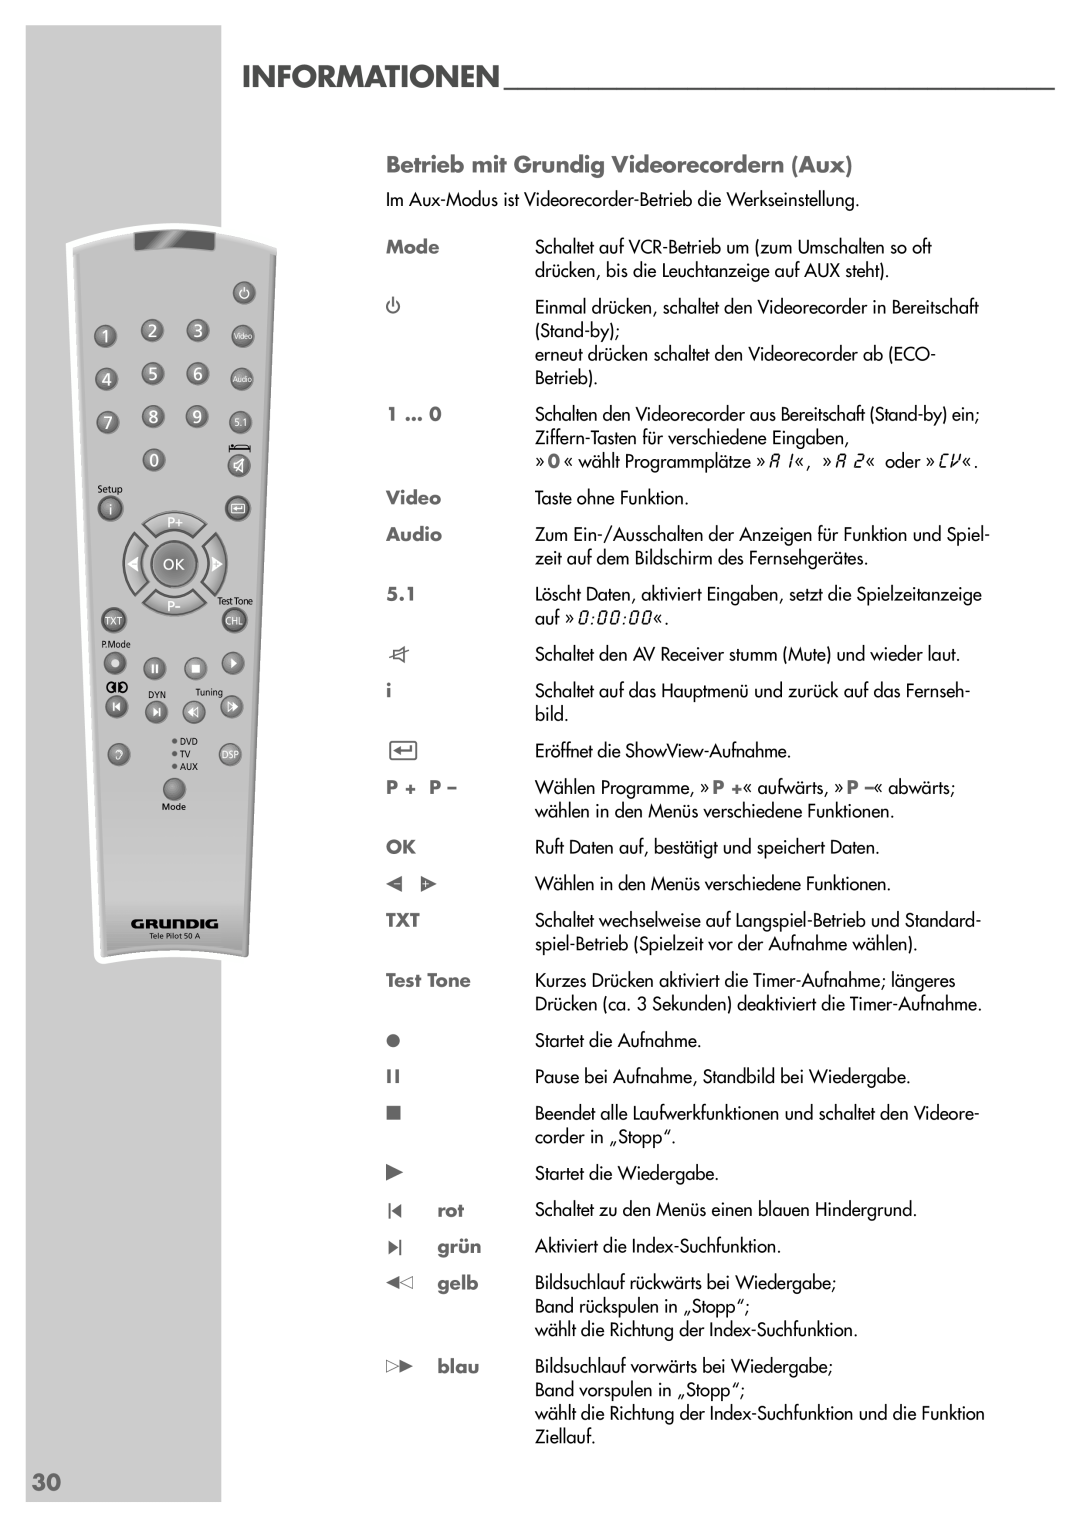 Grundig AVR 5200 DD manual Betrieb mit Grundig Videorecordern Aux, auf » 0 0 0 0 0 « 